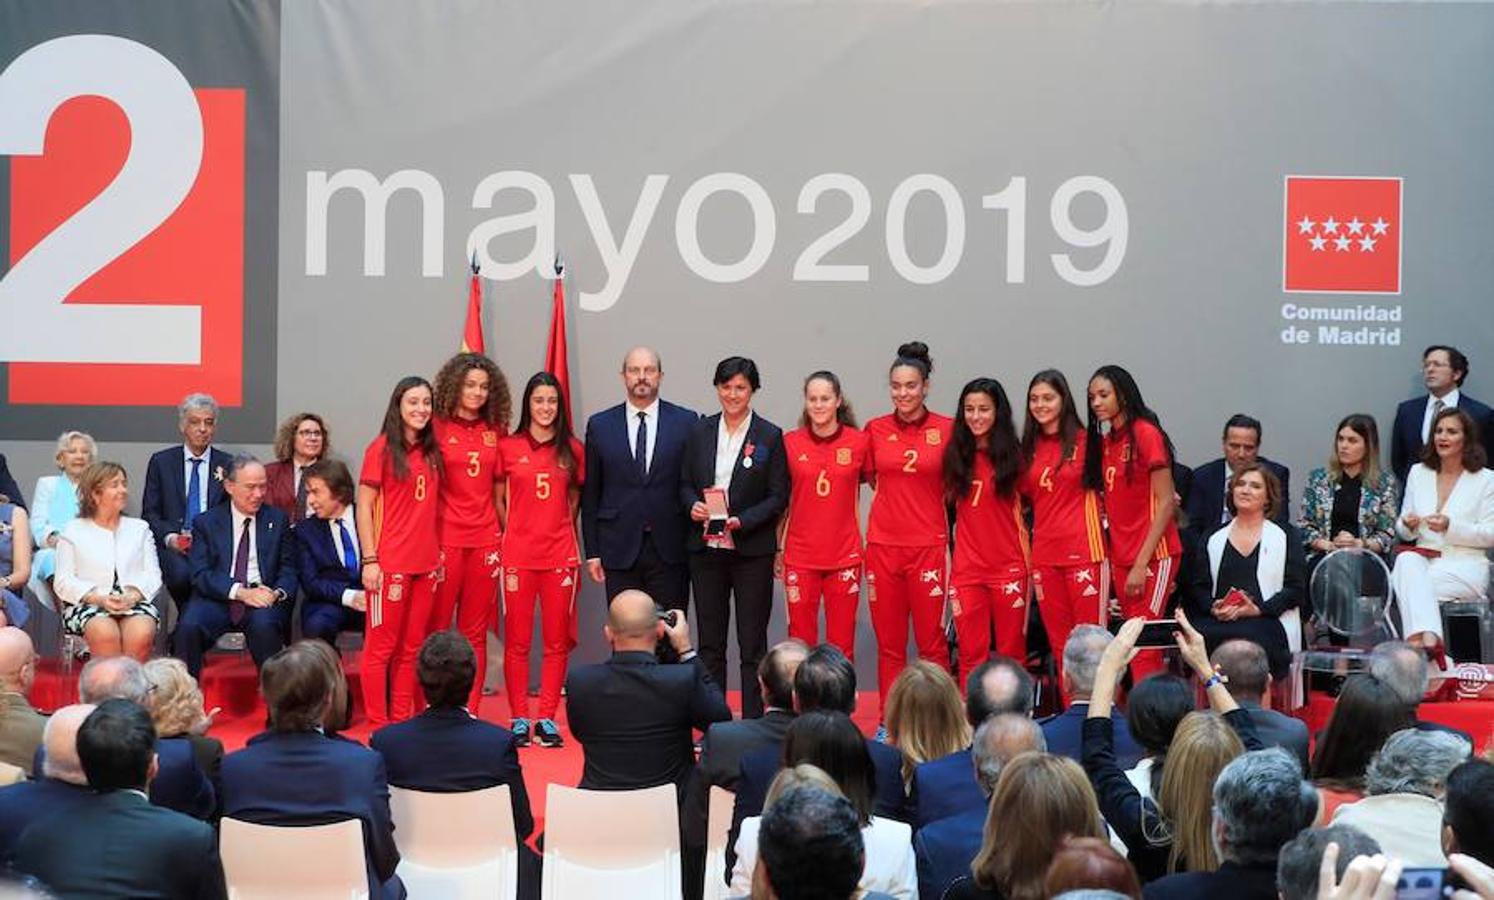 Las imágenes más destacadas de los actos oficiales del Dos de Mayo en Madrid. La selección Española de Fútbol Femenino Sub - 17 ha recibido también la Medalla de Plata de la Comunidad de Madrid